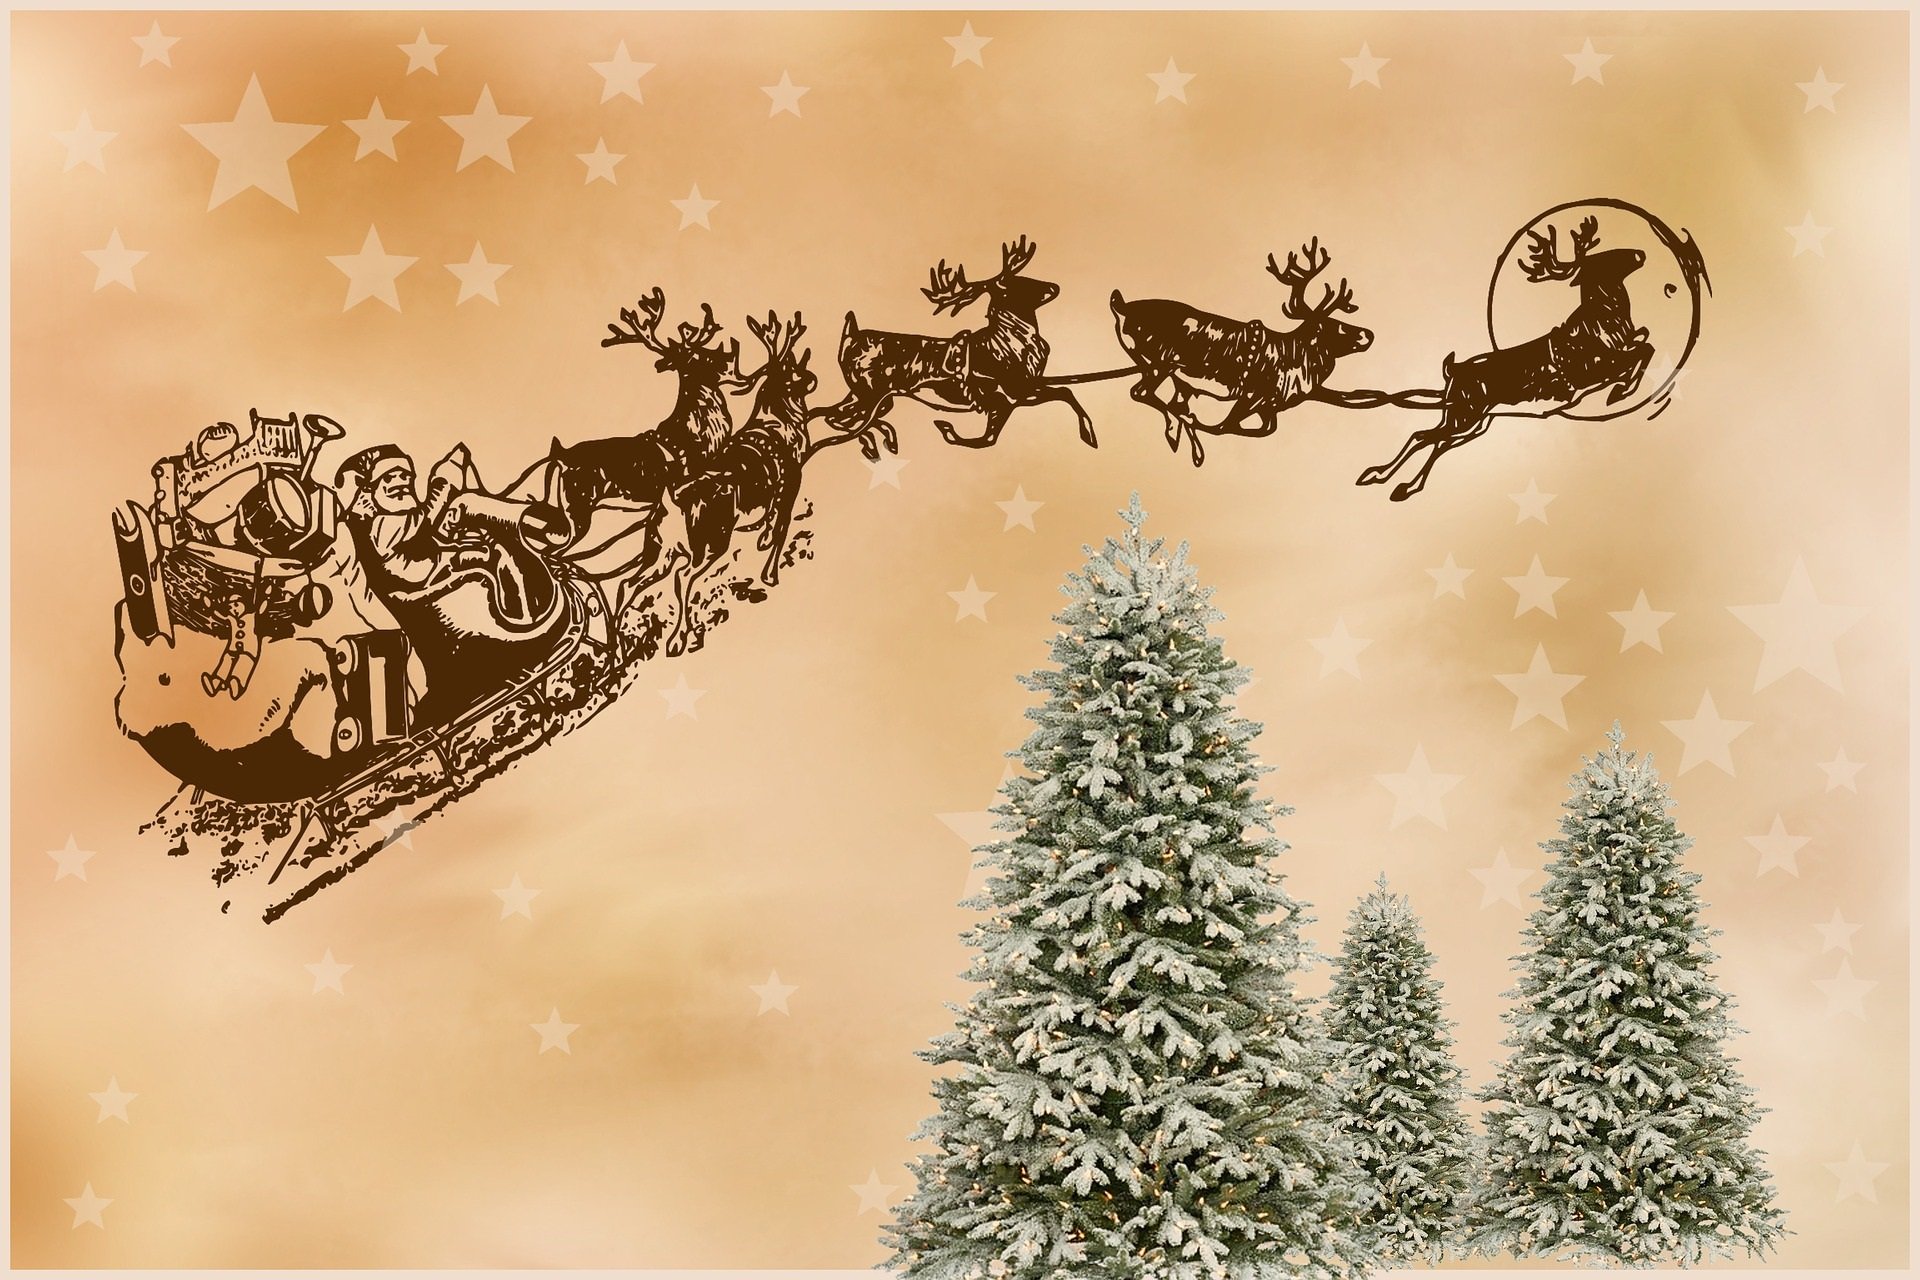 Angielska piosenka świąteczna dla dzieci o Mikołaju Here Comes Santa Claus, tekst i muzyka